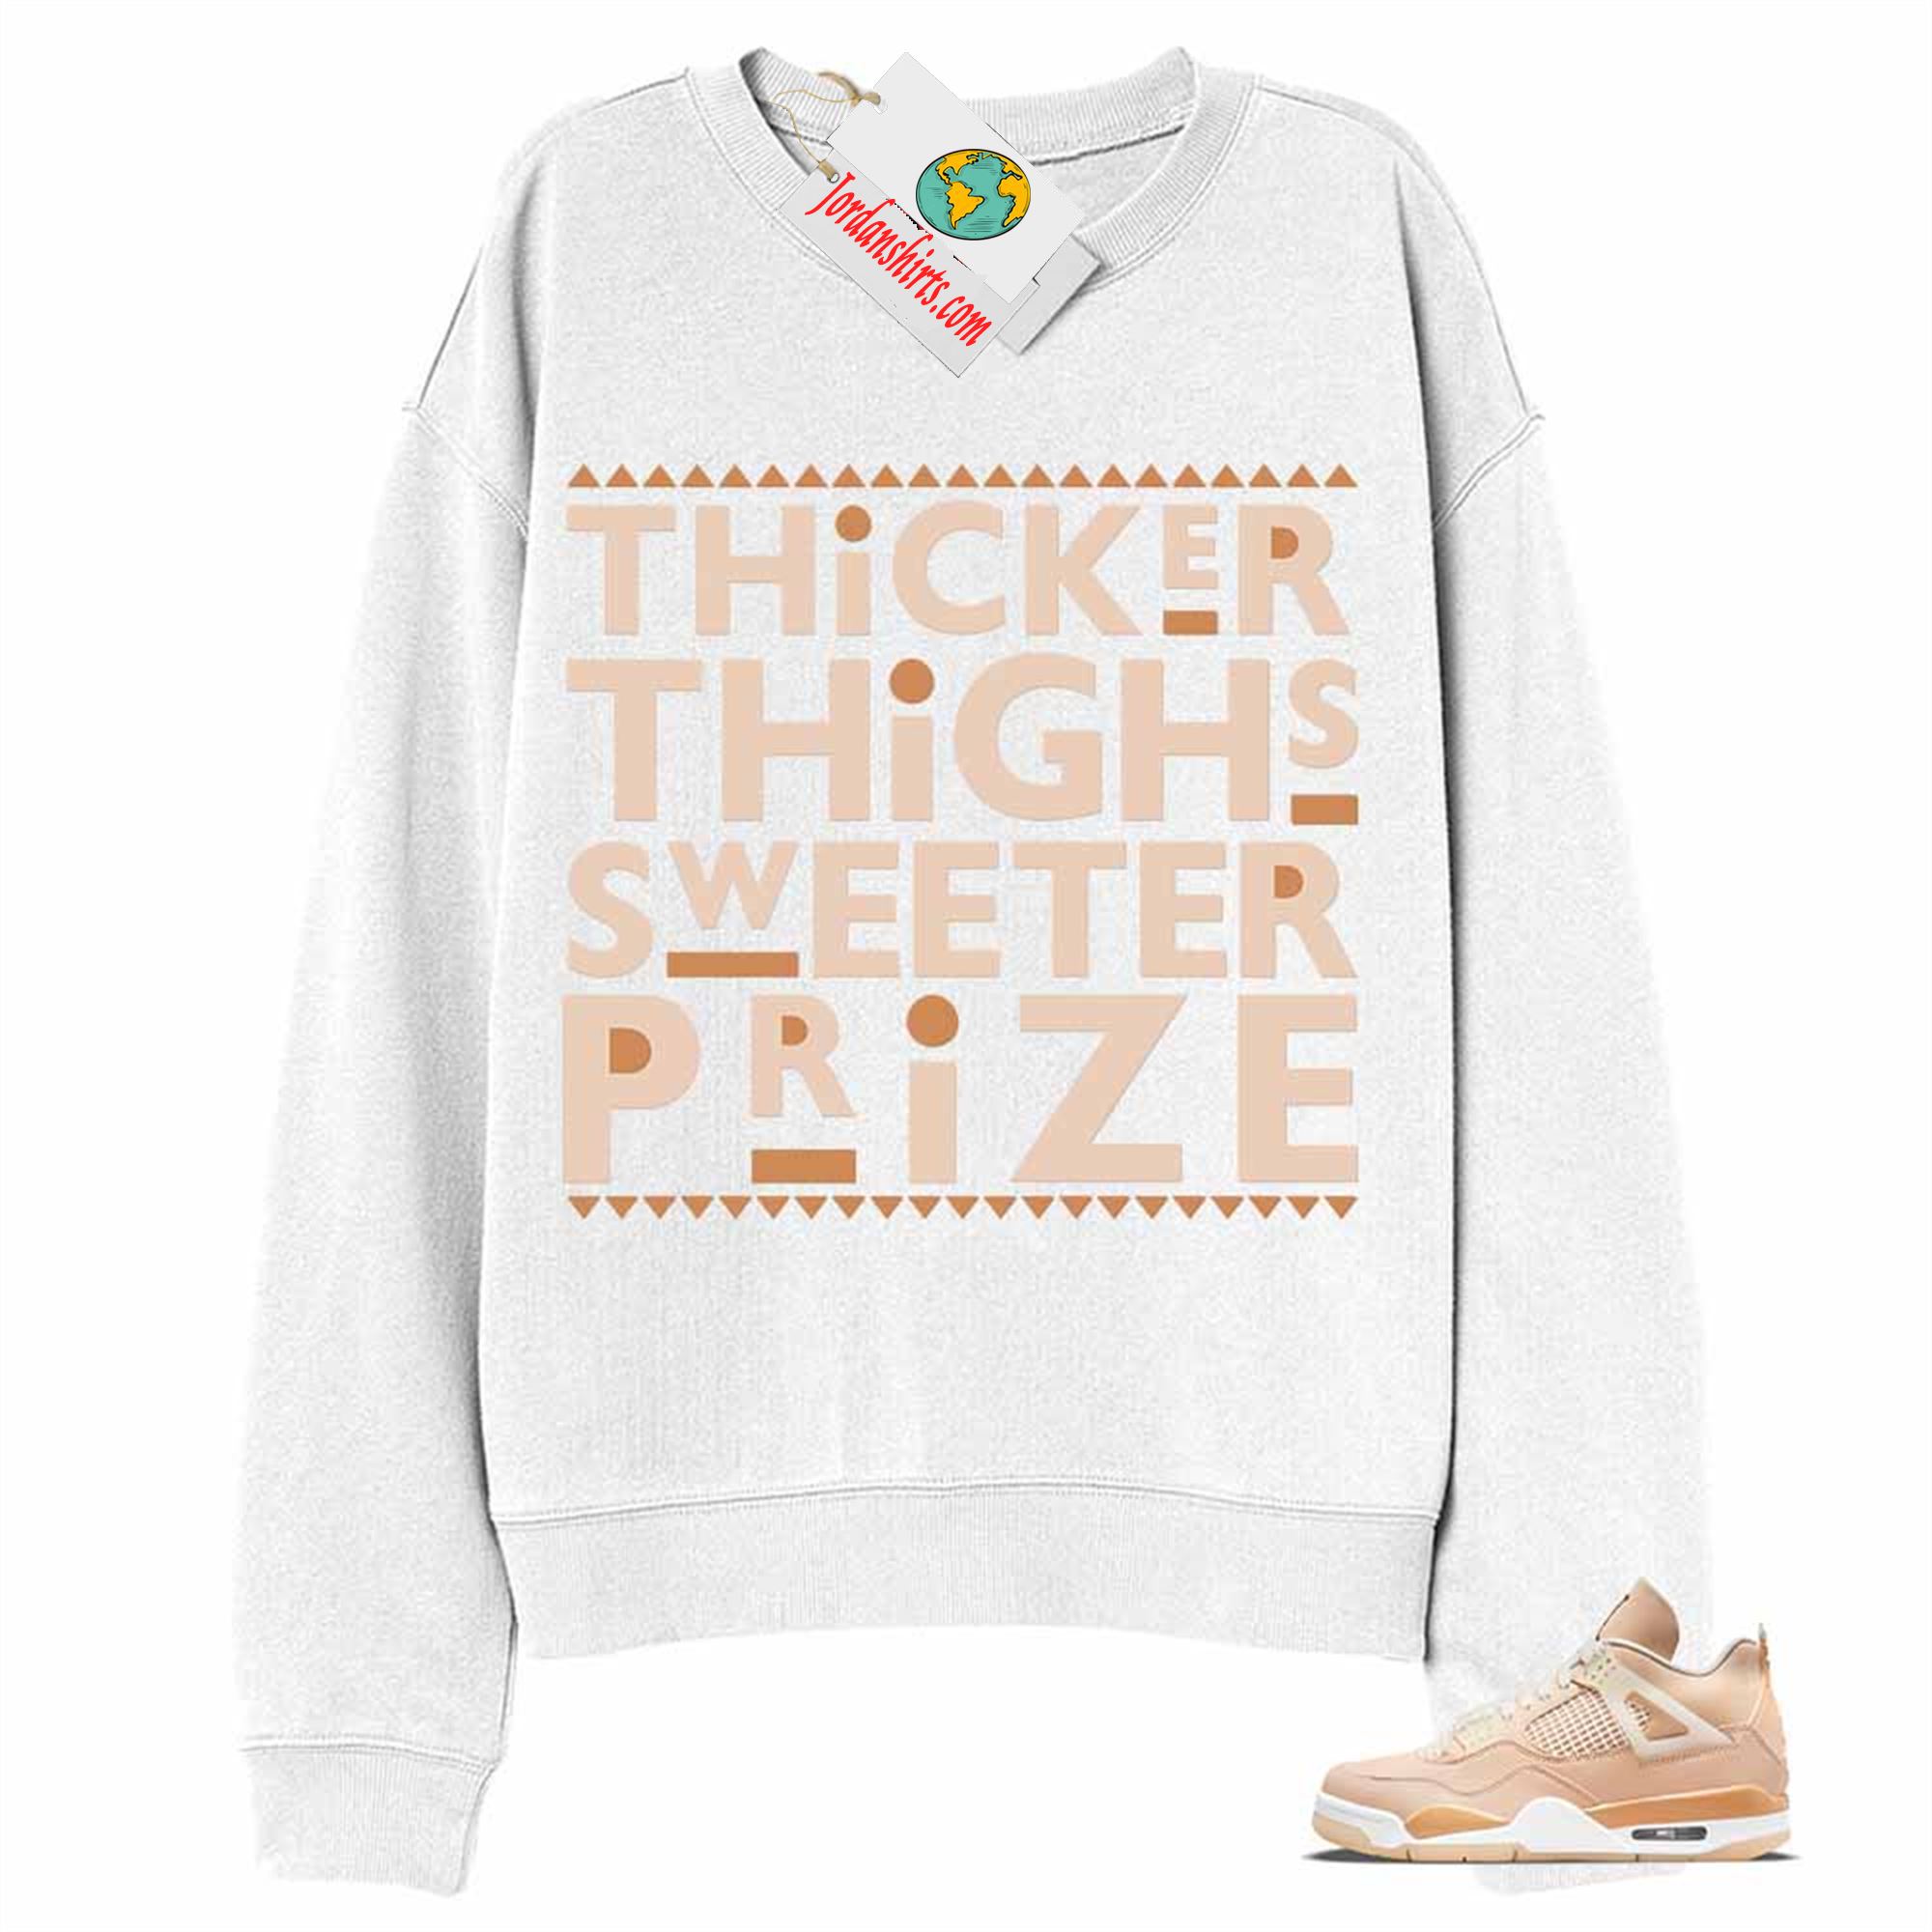 Jordan 4 Sweatshirt, Thicker Thighs Sweeter Prize White Sweatshirt Air Jordan 4 Shimmer 4s Full Size Up To 5xl